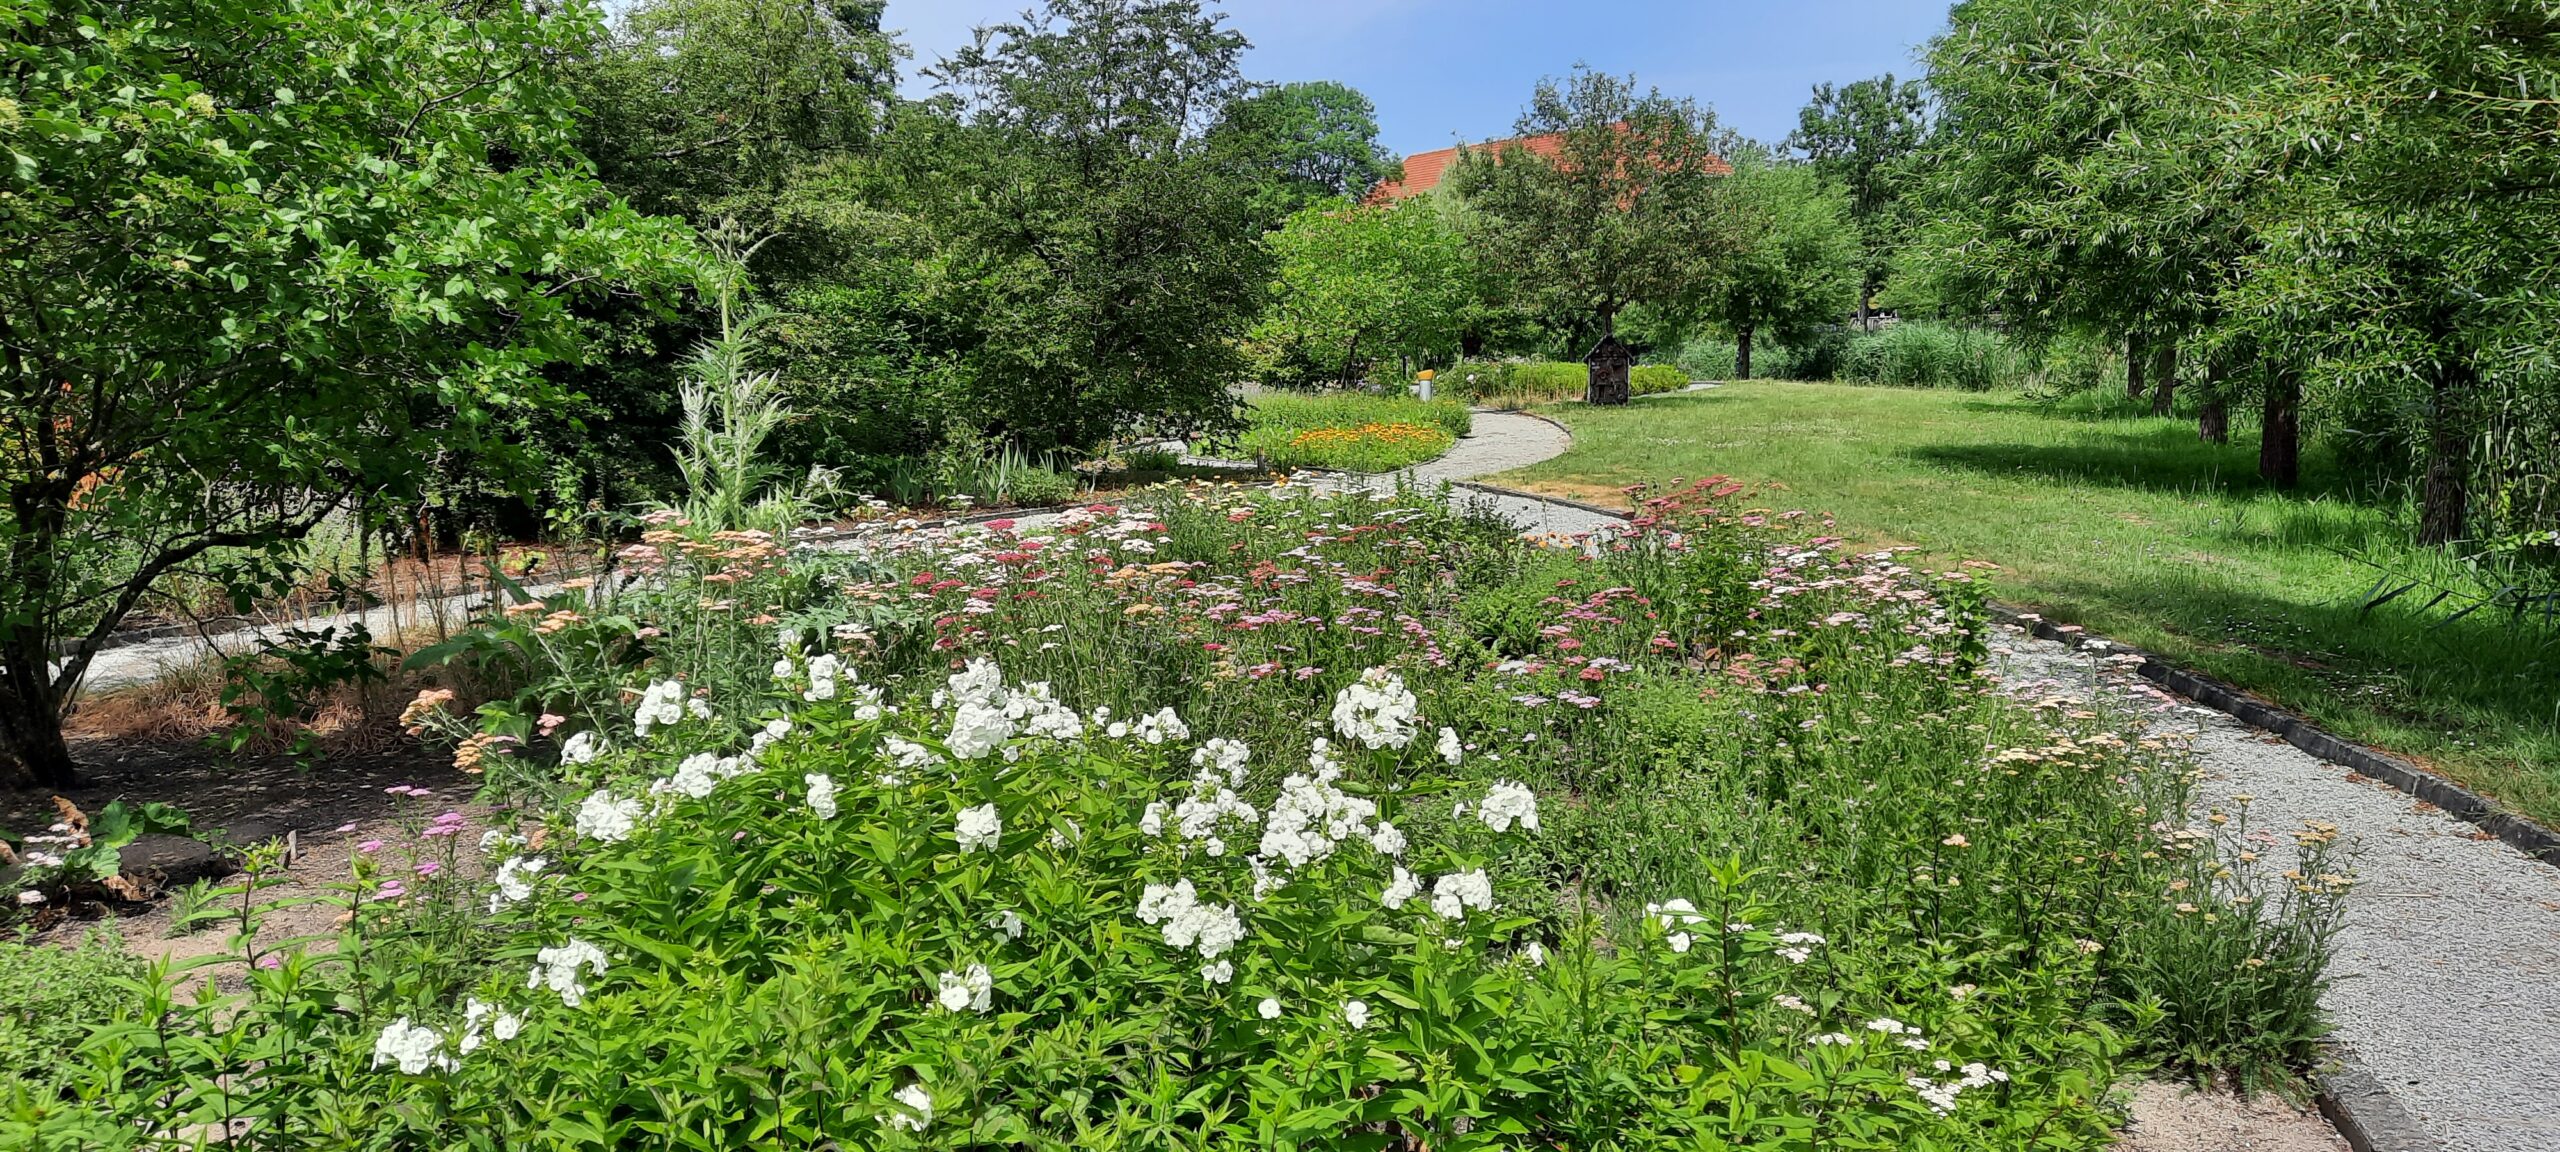 Een kleurrijke afbeelding van de tuin met verharde paden en groene borders